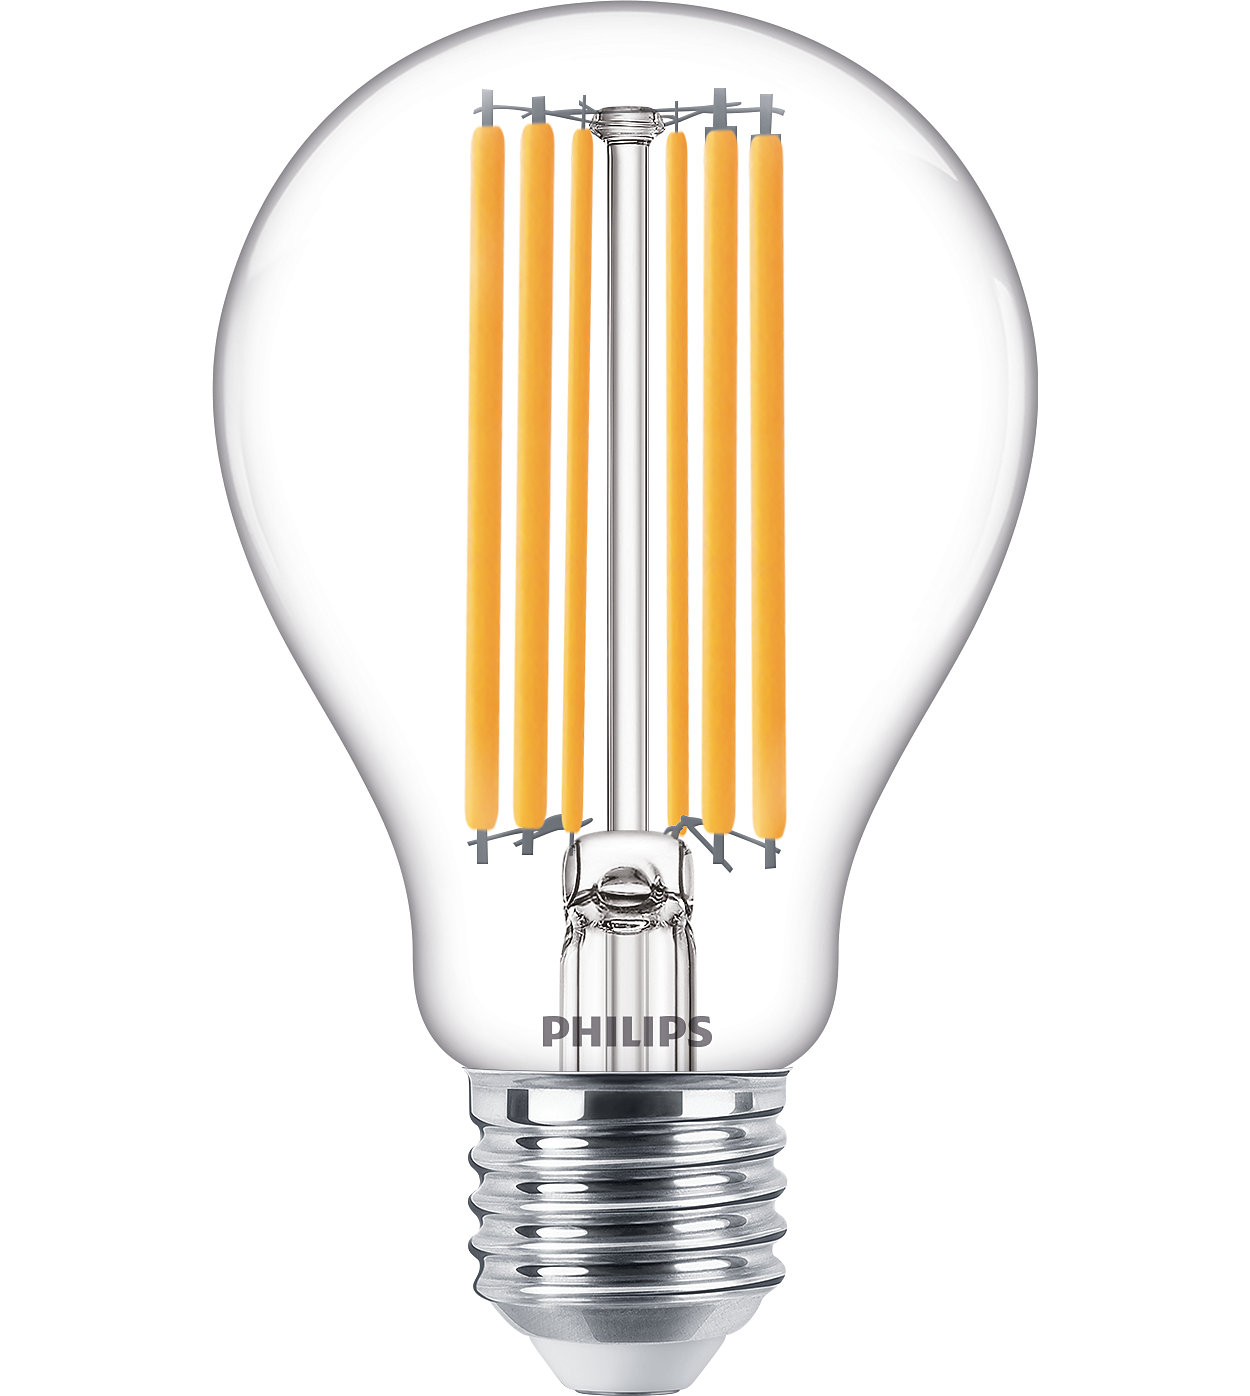 Voor dagelijkse verlichting bieden CorePro LED-lampen met een hoog aantal lumen een uitstekende lichtkwaliteit